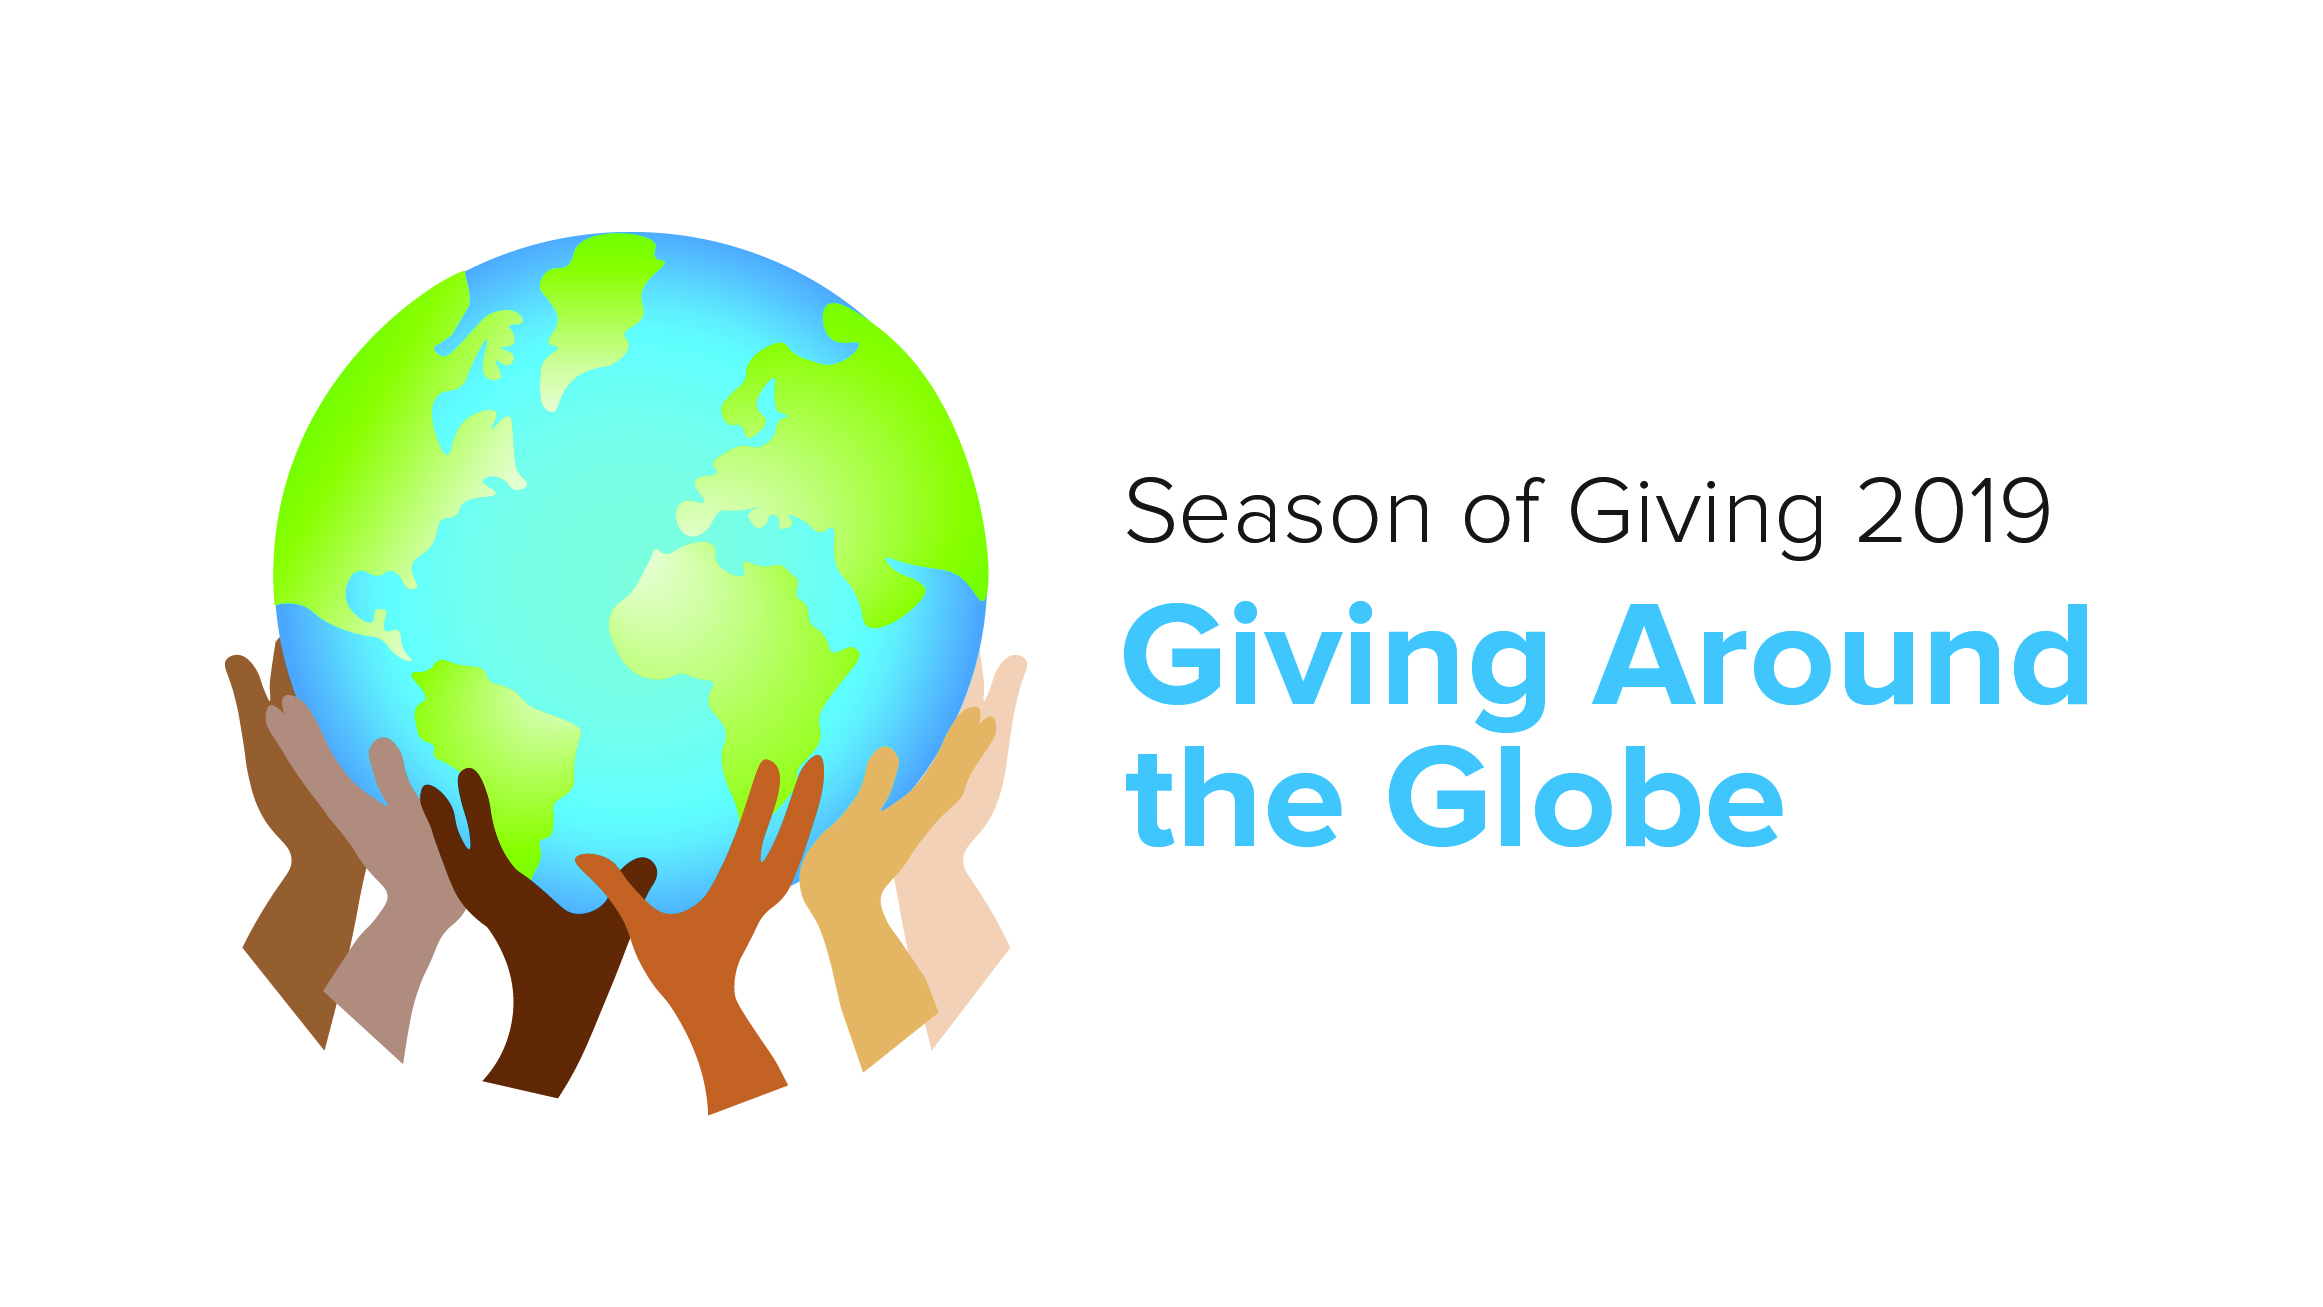 Zebra's 2019 Season of Giving logo